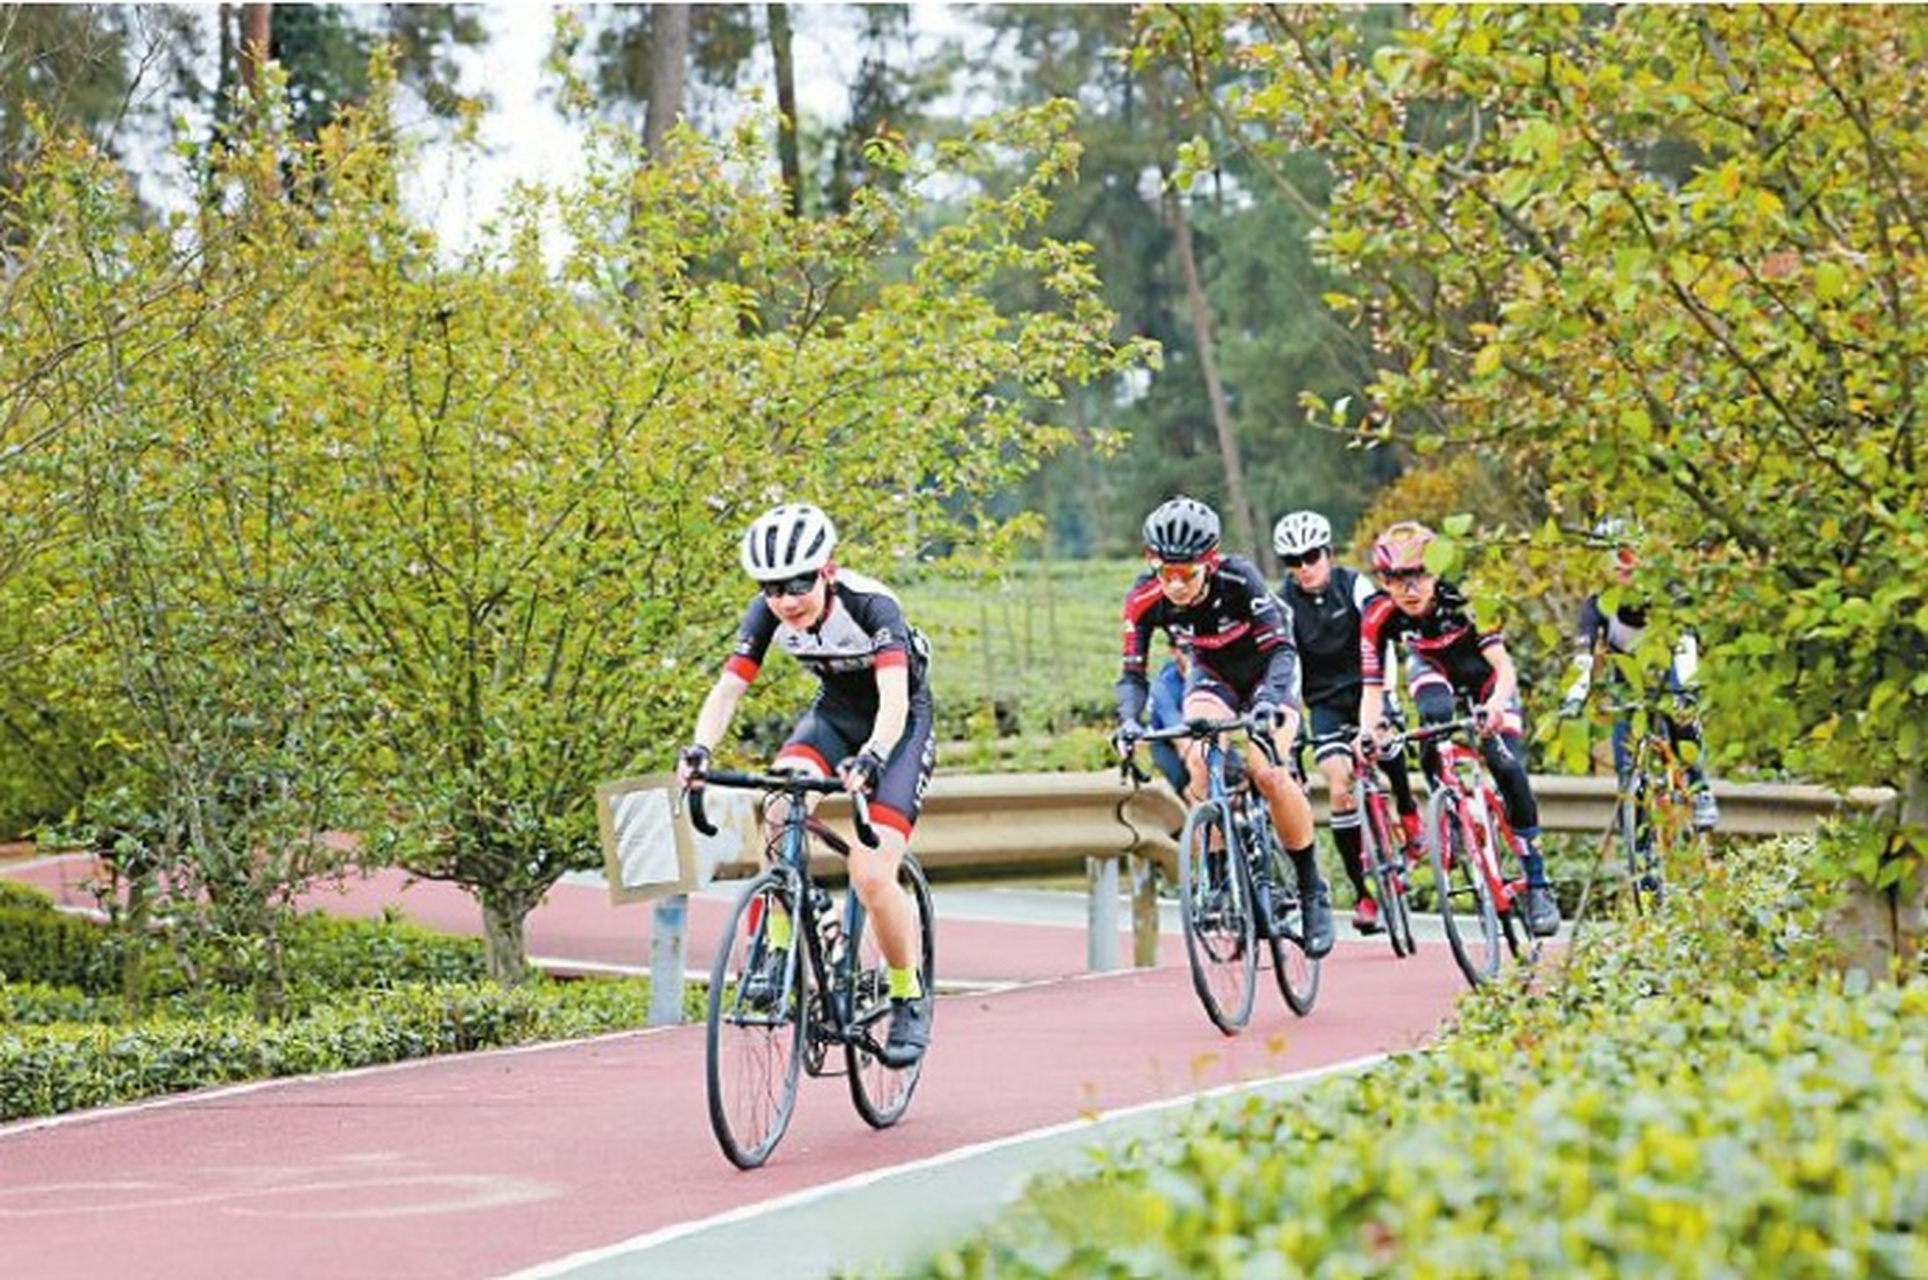 成都天府绿道国际自行车赛将在成都环城生态公园内举行